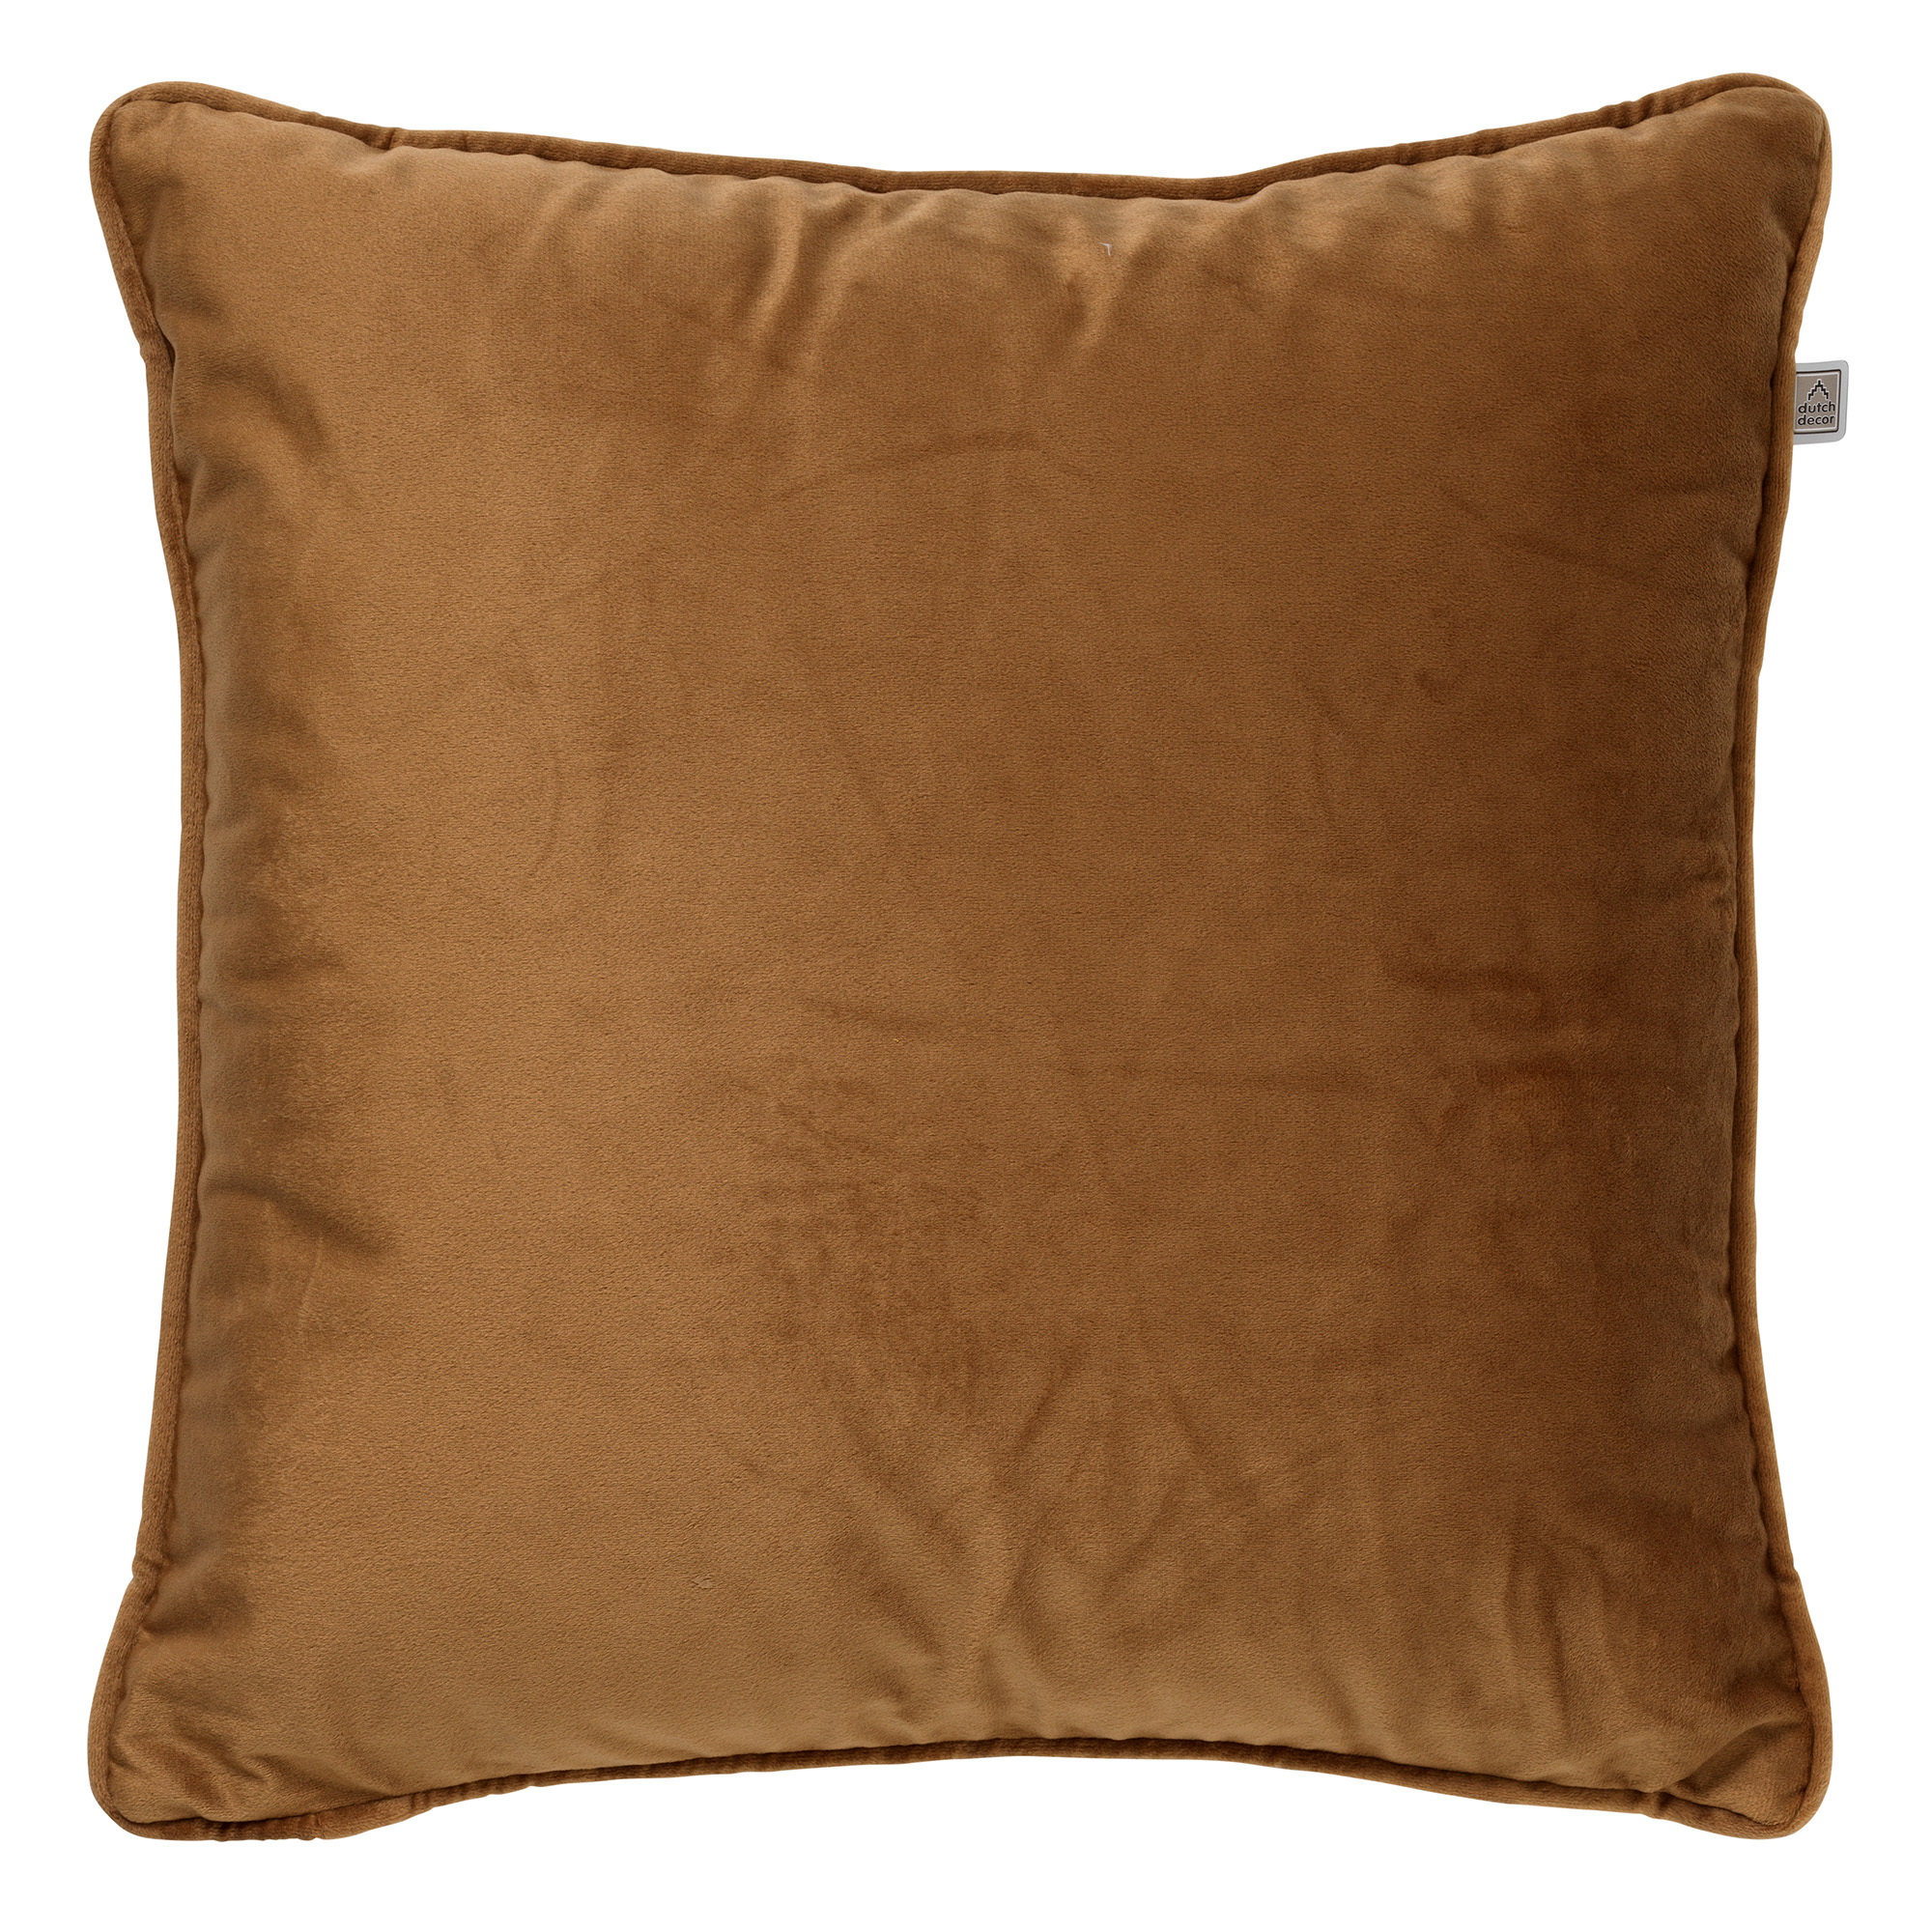 FINN - Cushion 45x45 cm Tobacco Brown - brown